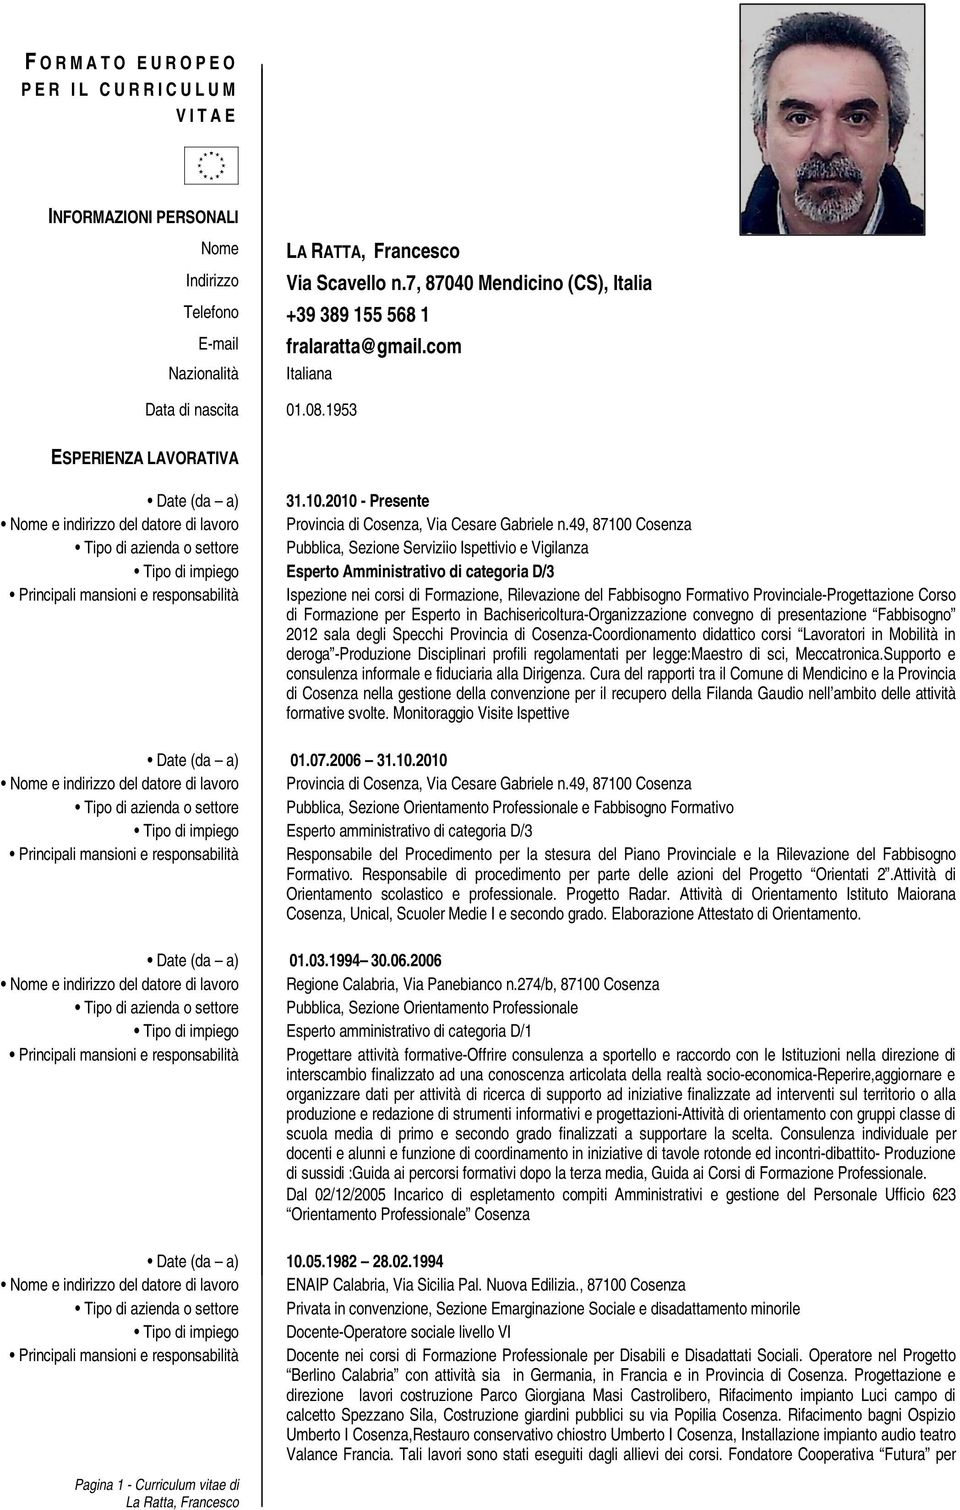 2010 - Presente Nome e indirizzo del datore di lavoro Provincia di Cosenza, Via Cesare Gabriele n.